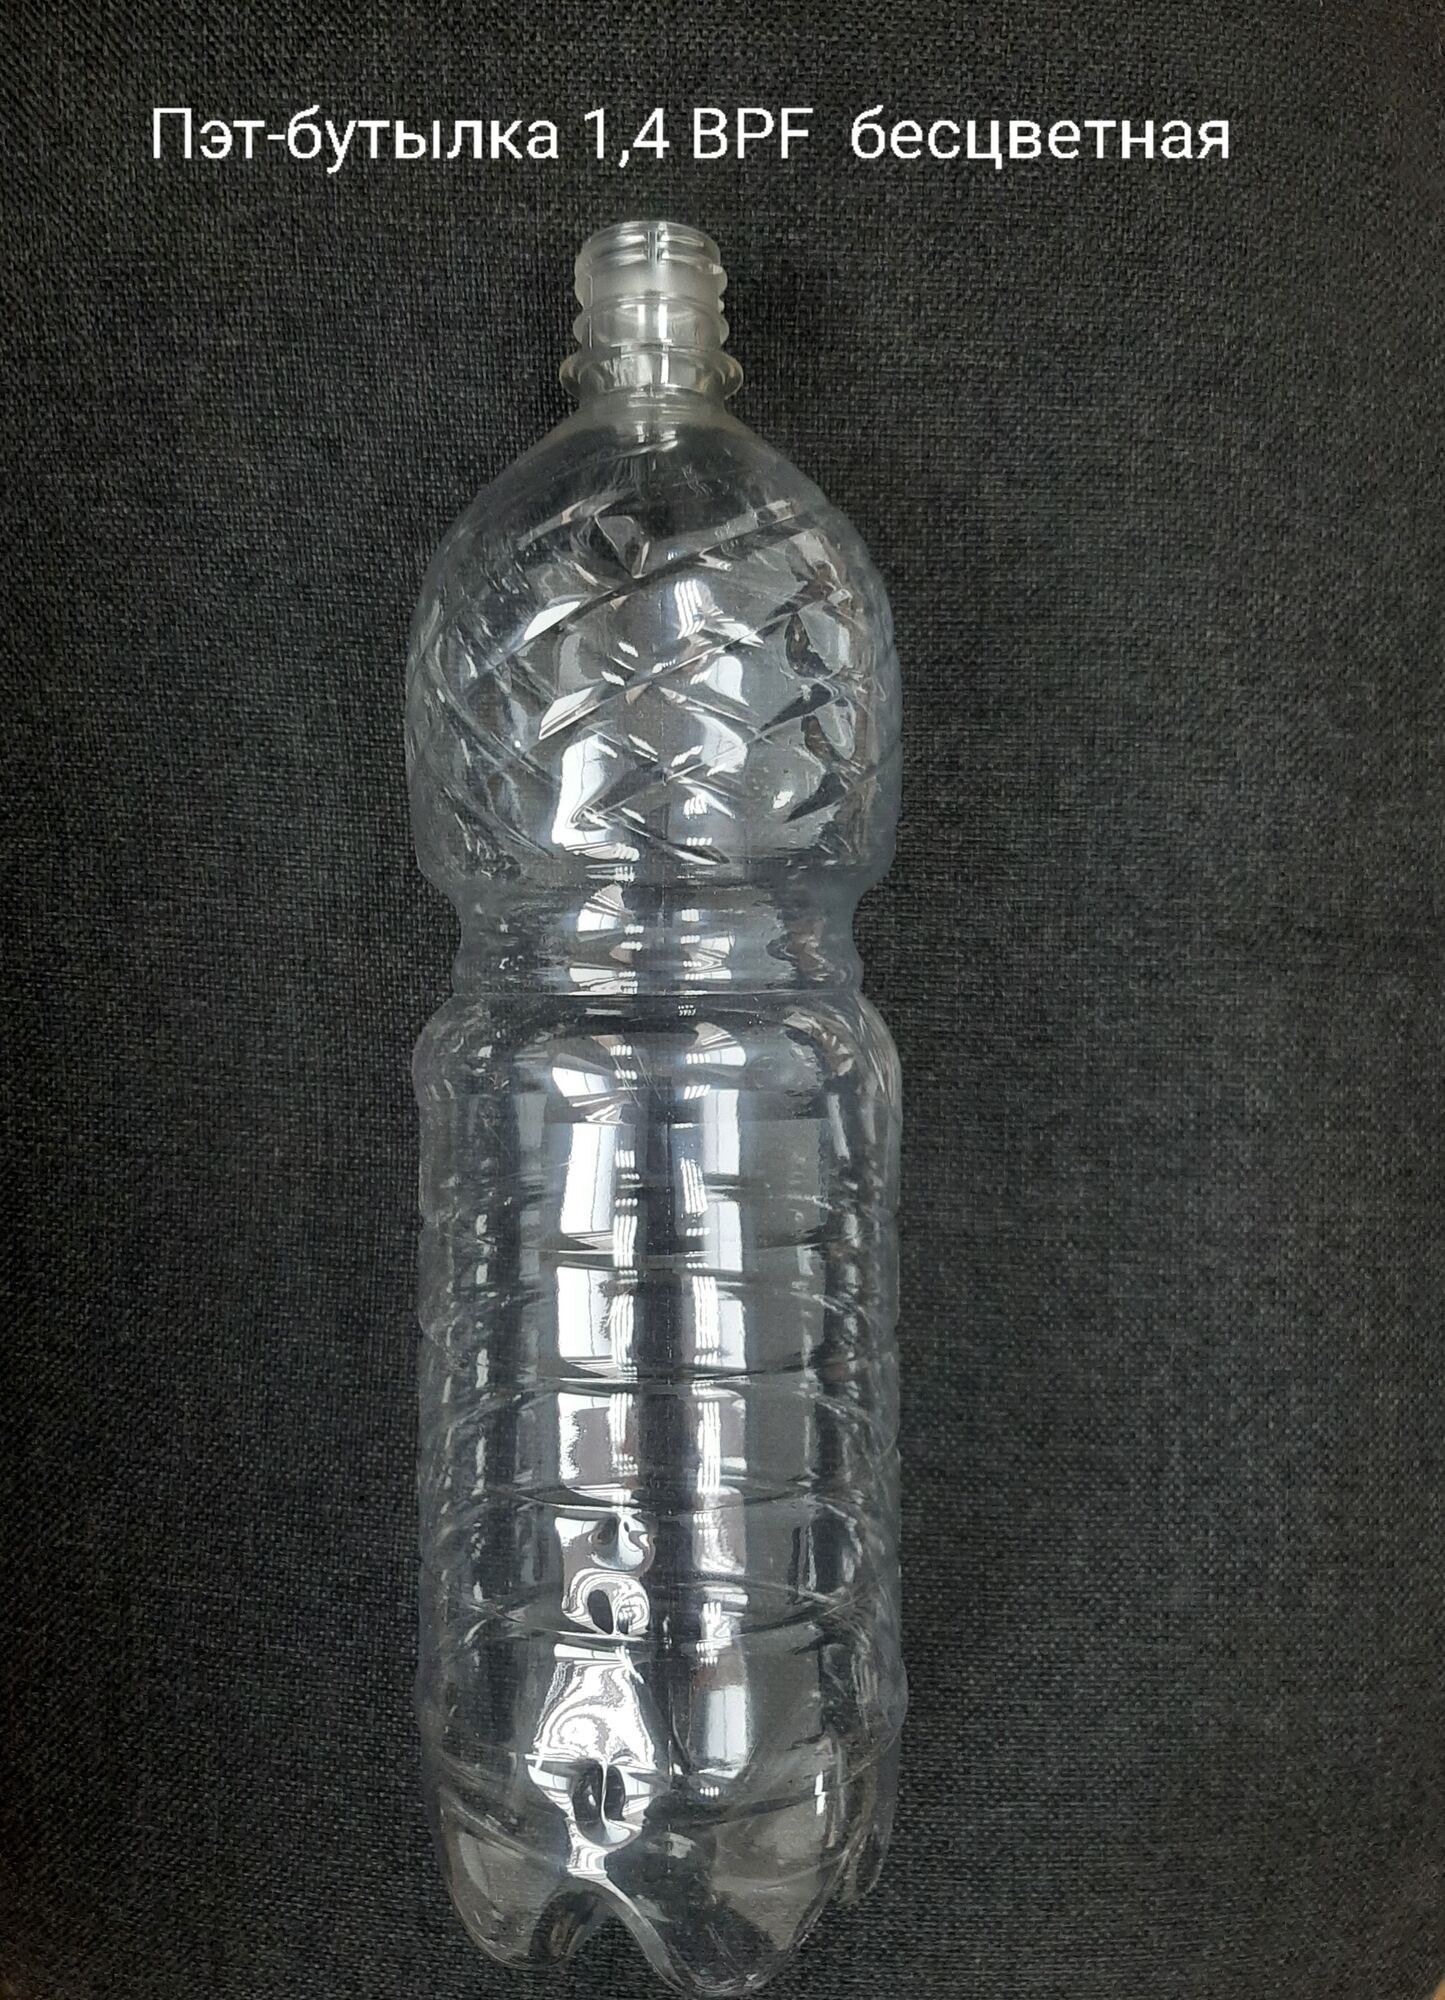 Пэт-бутылка 1,4 BPF, бесцветная (100 шт в упаковке) вес 25 гр